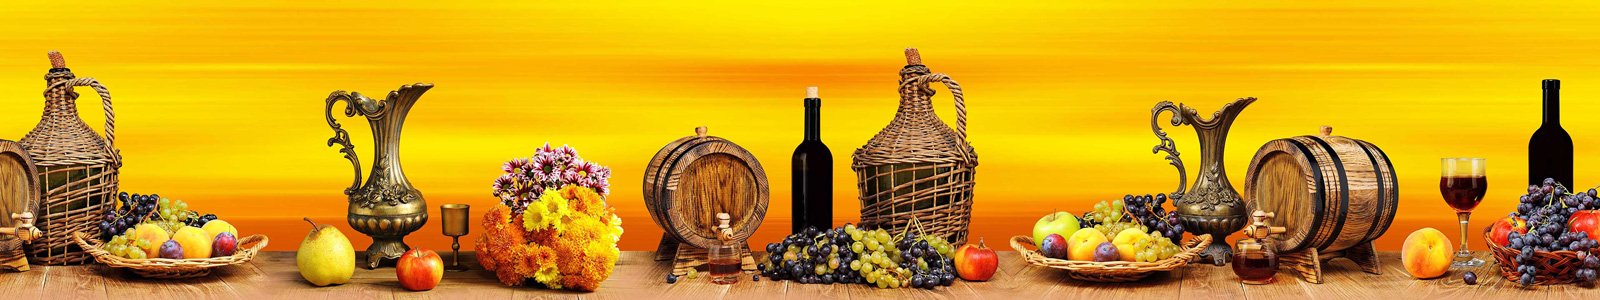 №6903 - Фрукты и вино на столе на оранжевом фоне